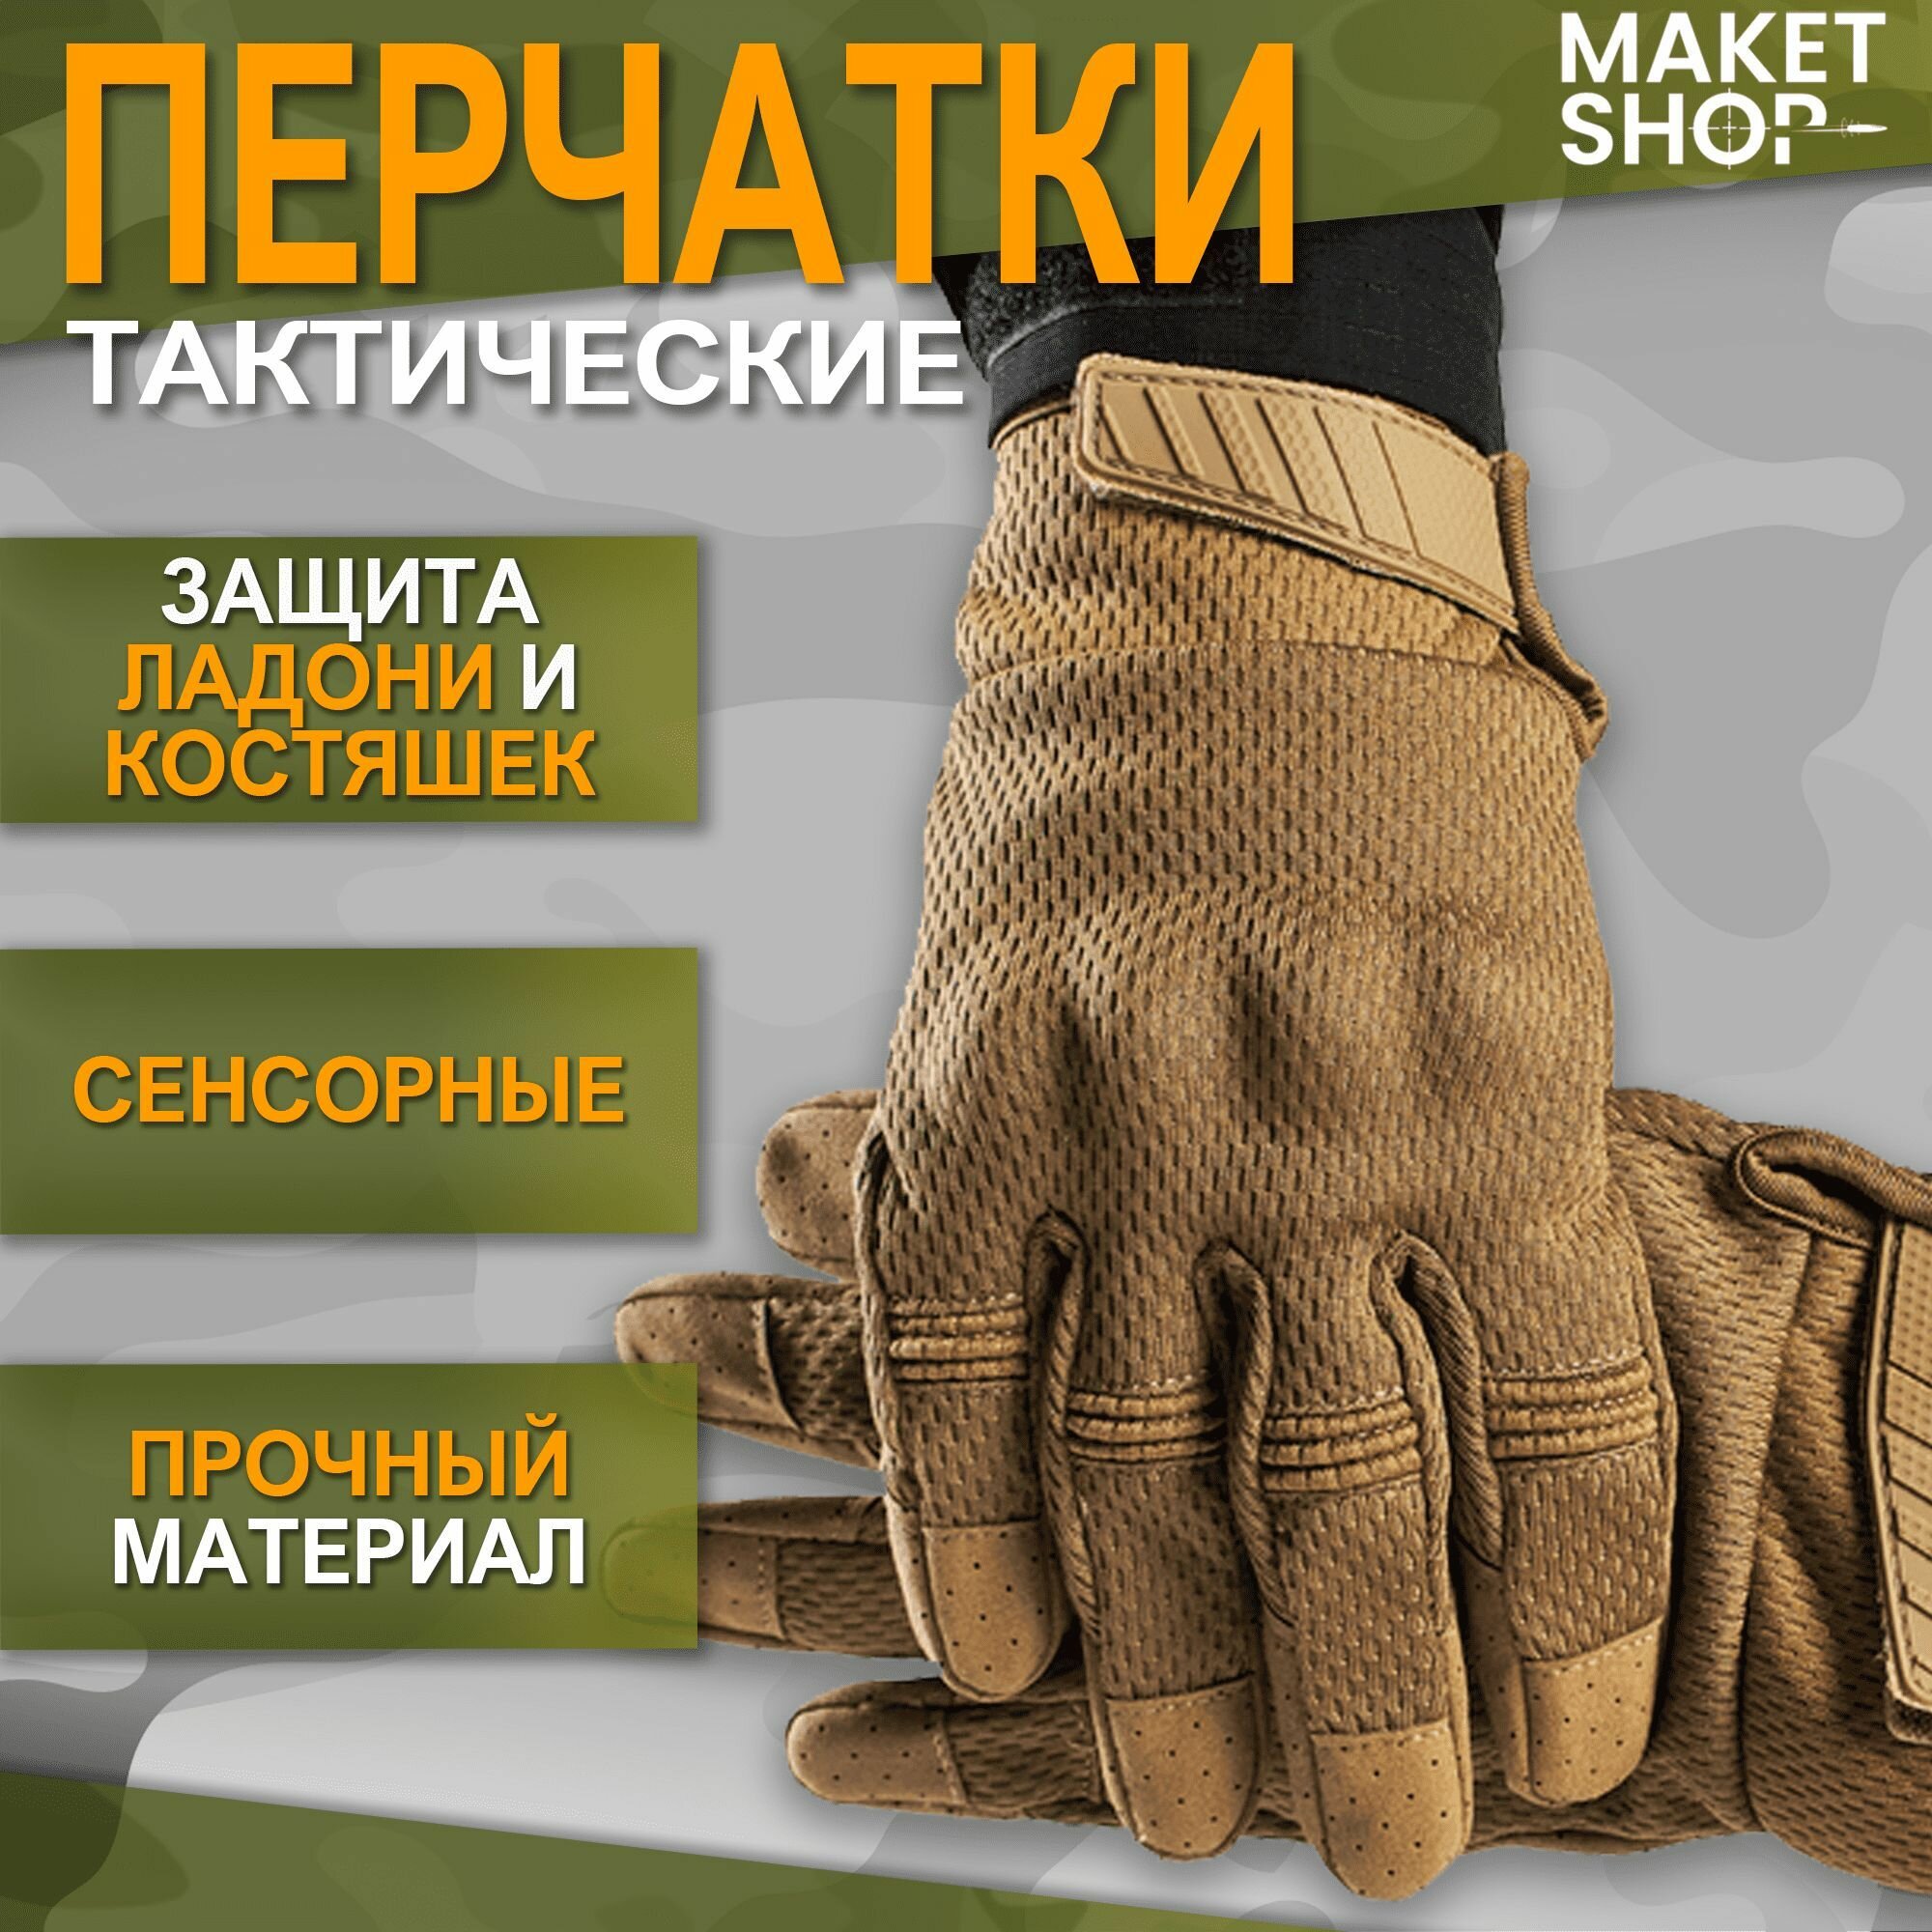 Тактические перчатки с защитой костяшек и ладони